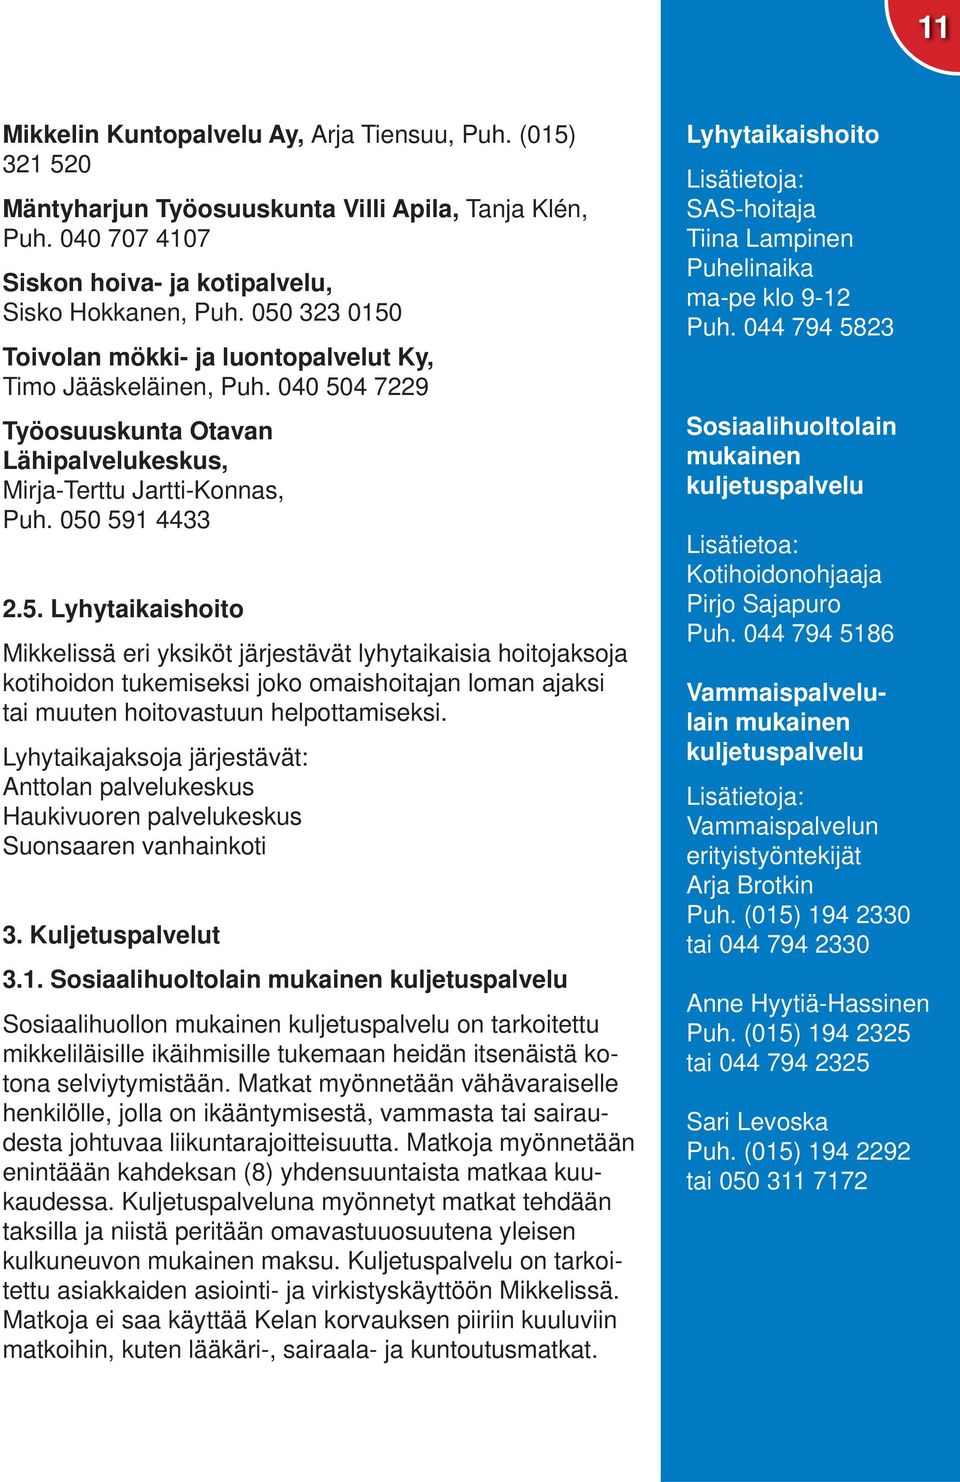 Lyhytaikajaksoja järjestävät: Anttolan palvelukeskus Haukivuoren palvelukeskus Suonsaaren vanhainkoti 3. Kuljetuspalvelut 3.1.